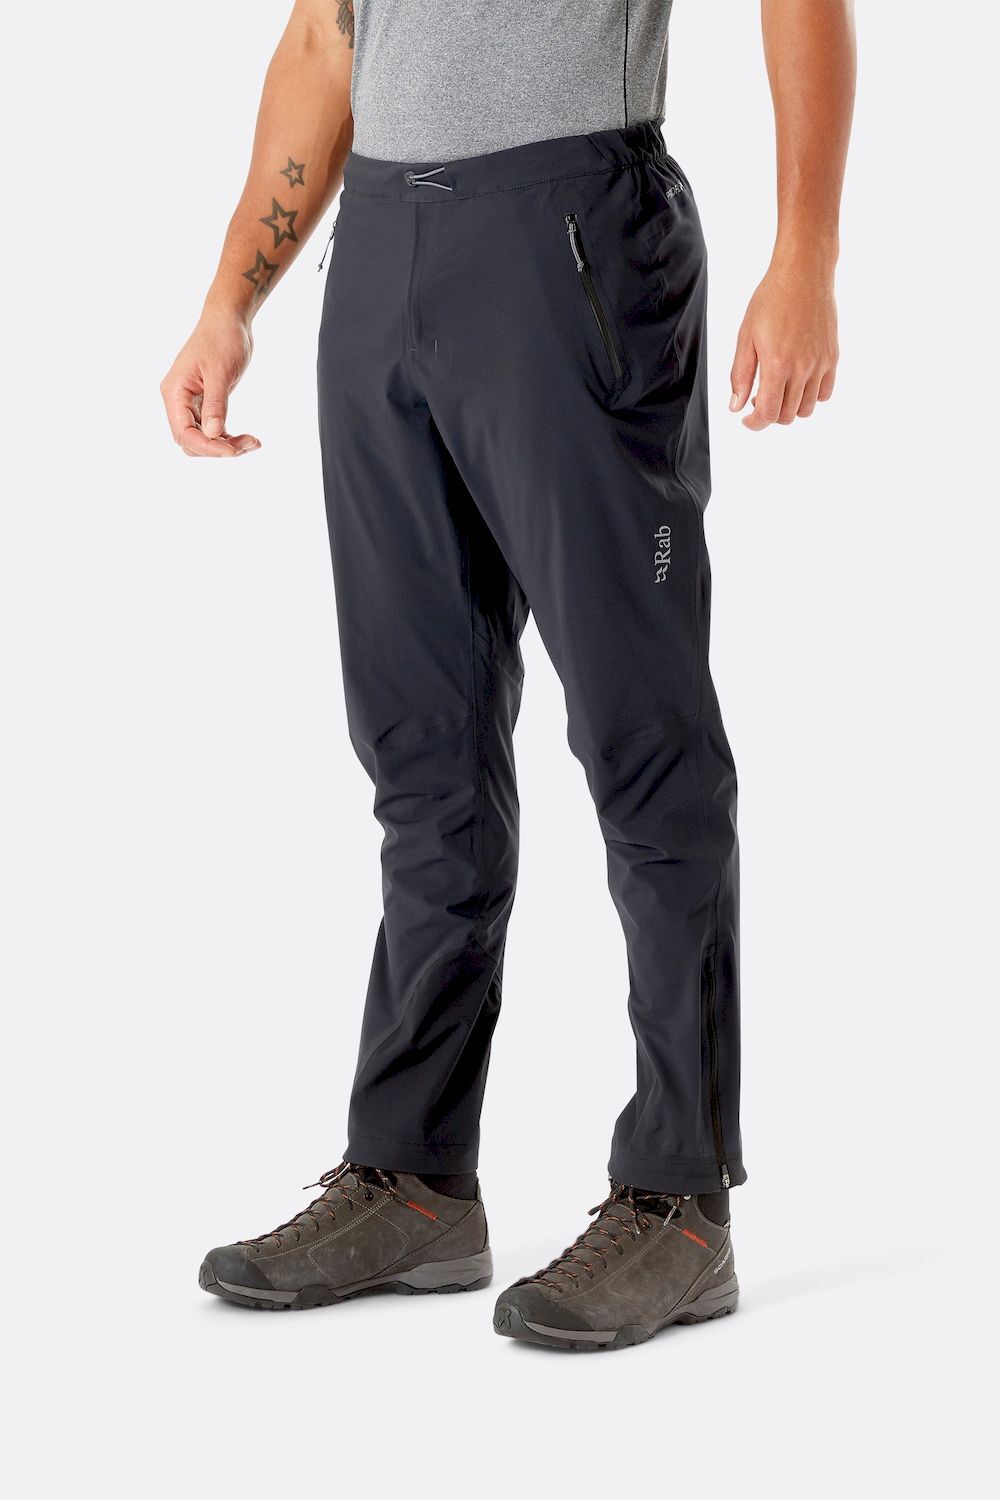 Men's water-repellent and wind-resistant trekking trousers - MT900 FORCLAZ  | Decathlon